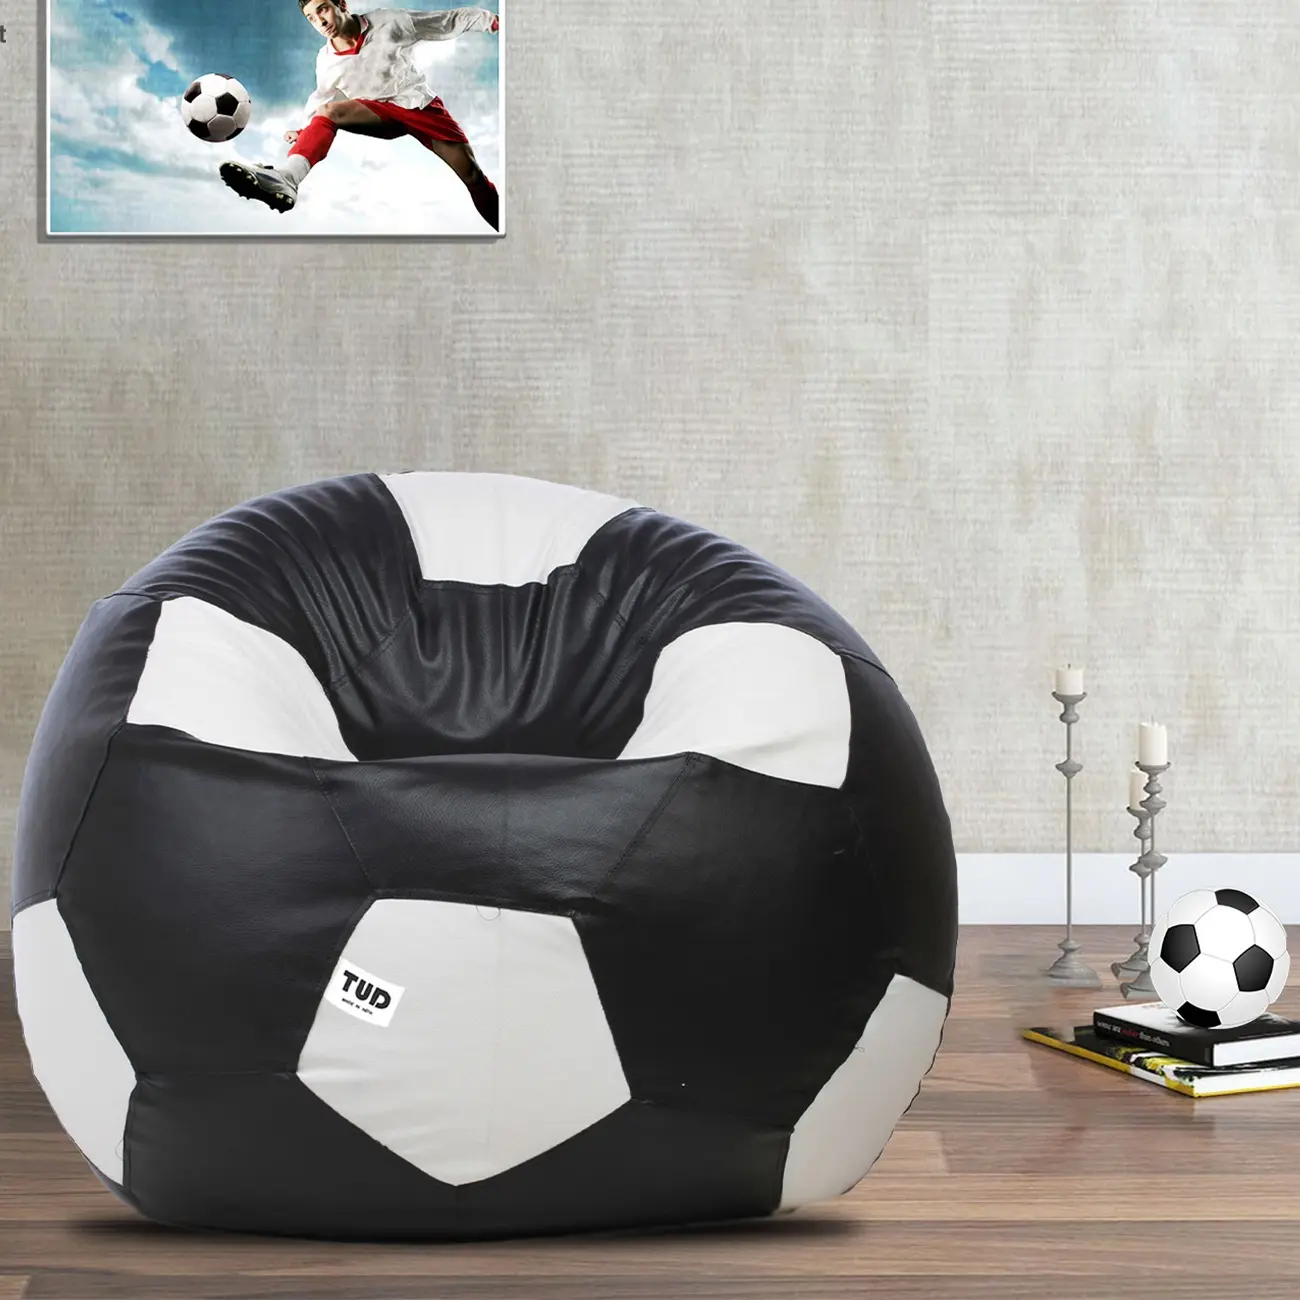 أسود أبيض تصميم كرة القدم نفخ عملاقة القهوة دافئ داخلي في الهواء الطلق كسول صبي الترفيه أكياس الفول الكراسي الأريكة الفول